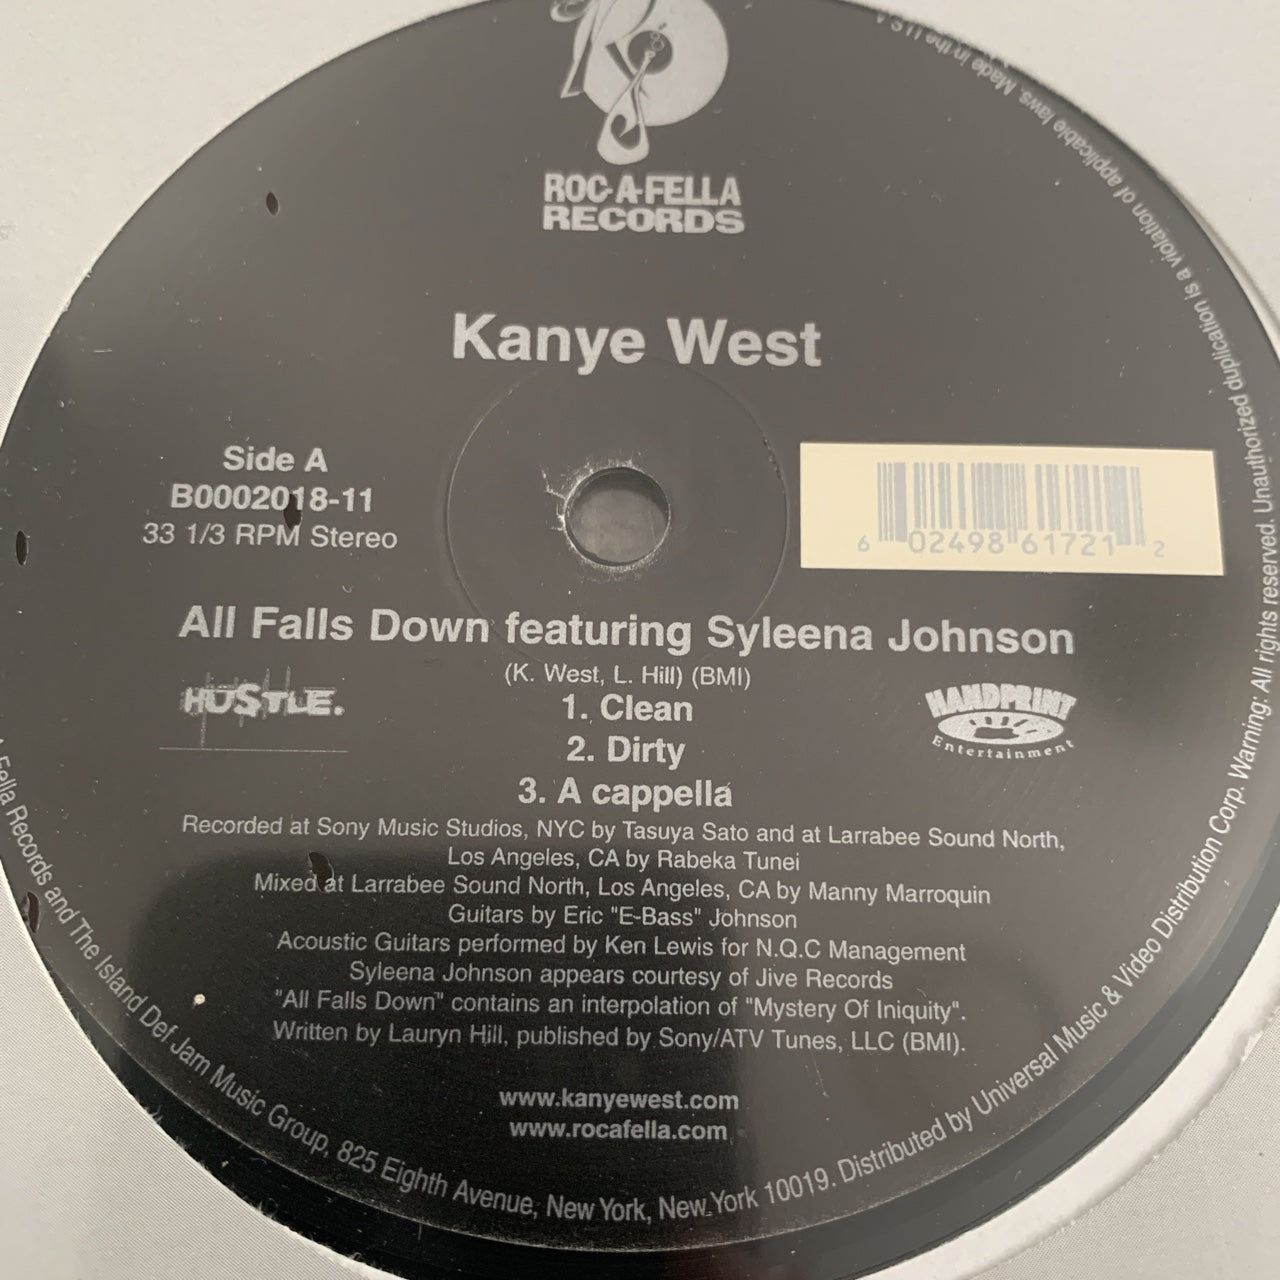 Kanye West “All falls Down” / “Get Em High”